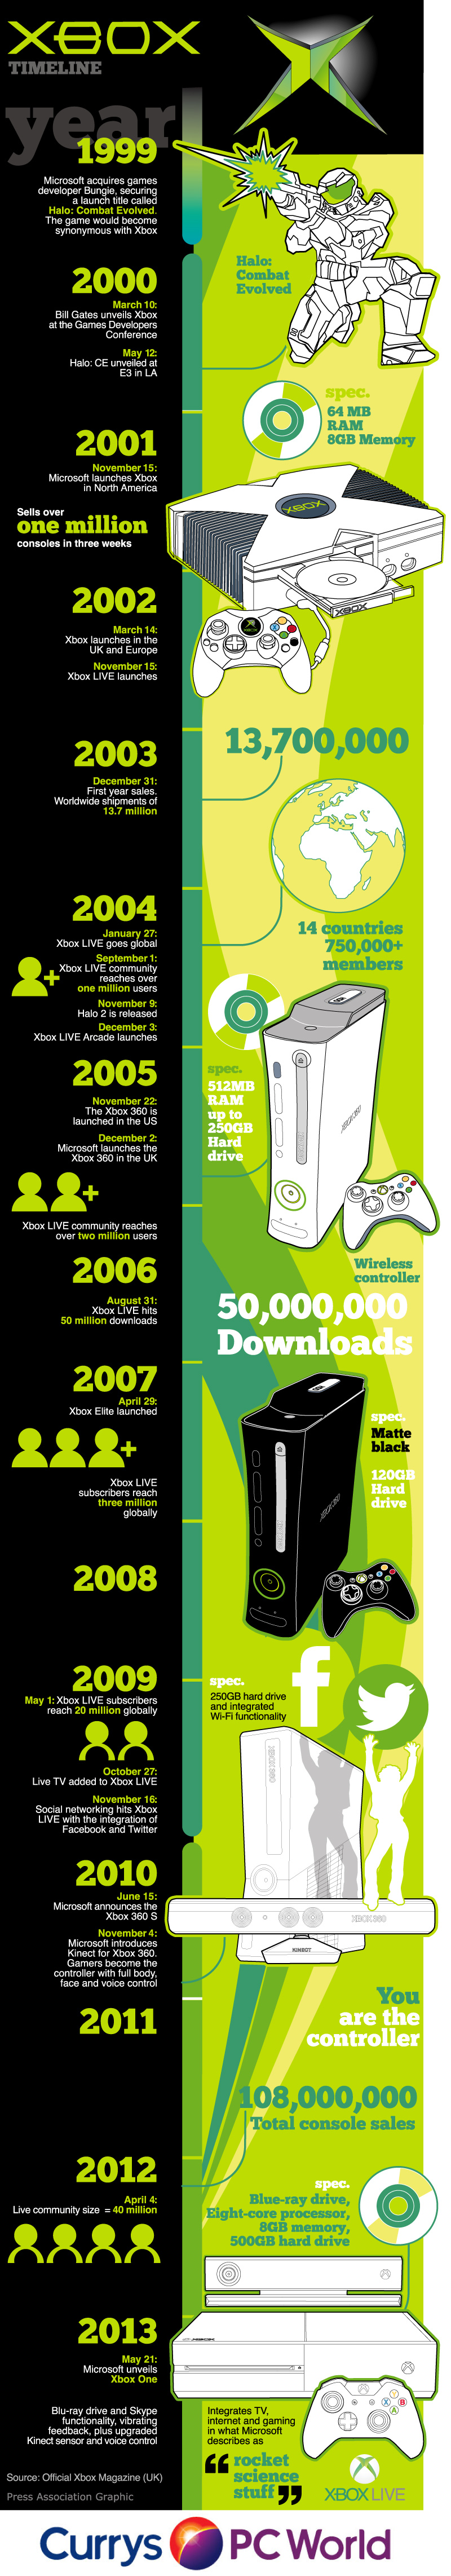 Xbox timeline